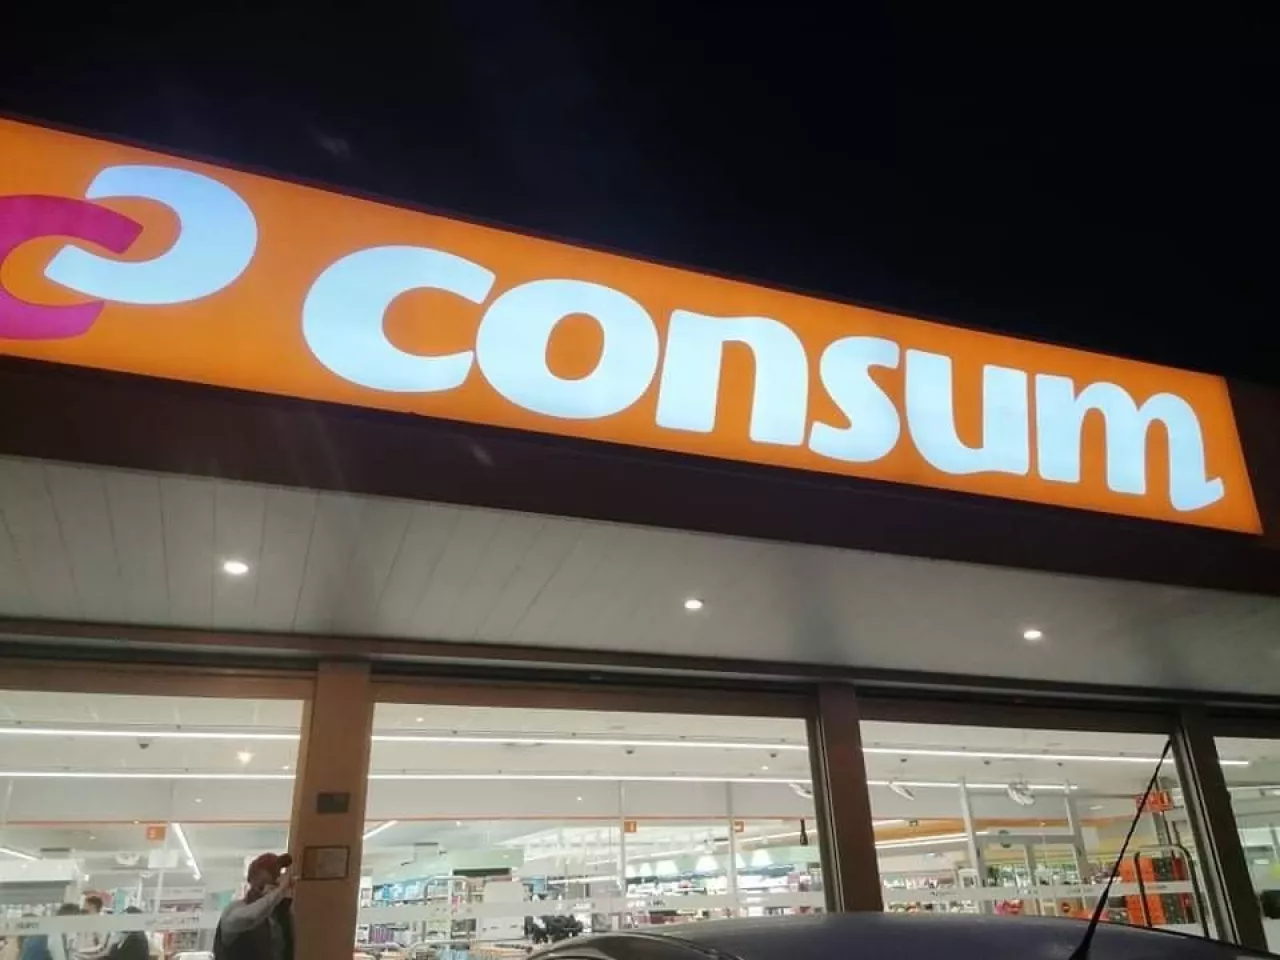 Consume (Consume)